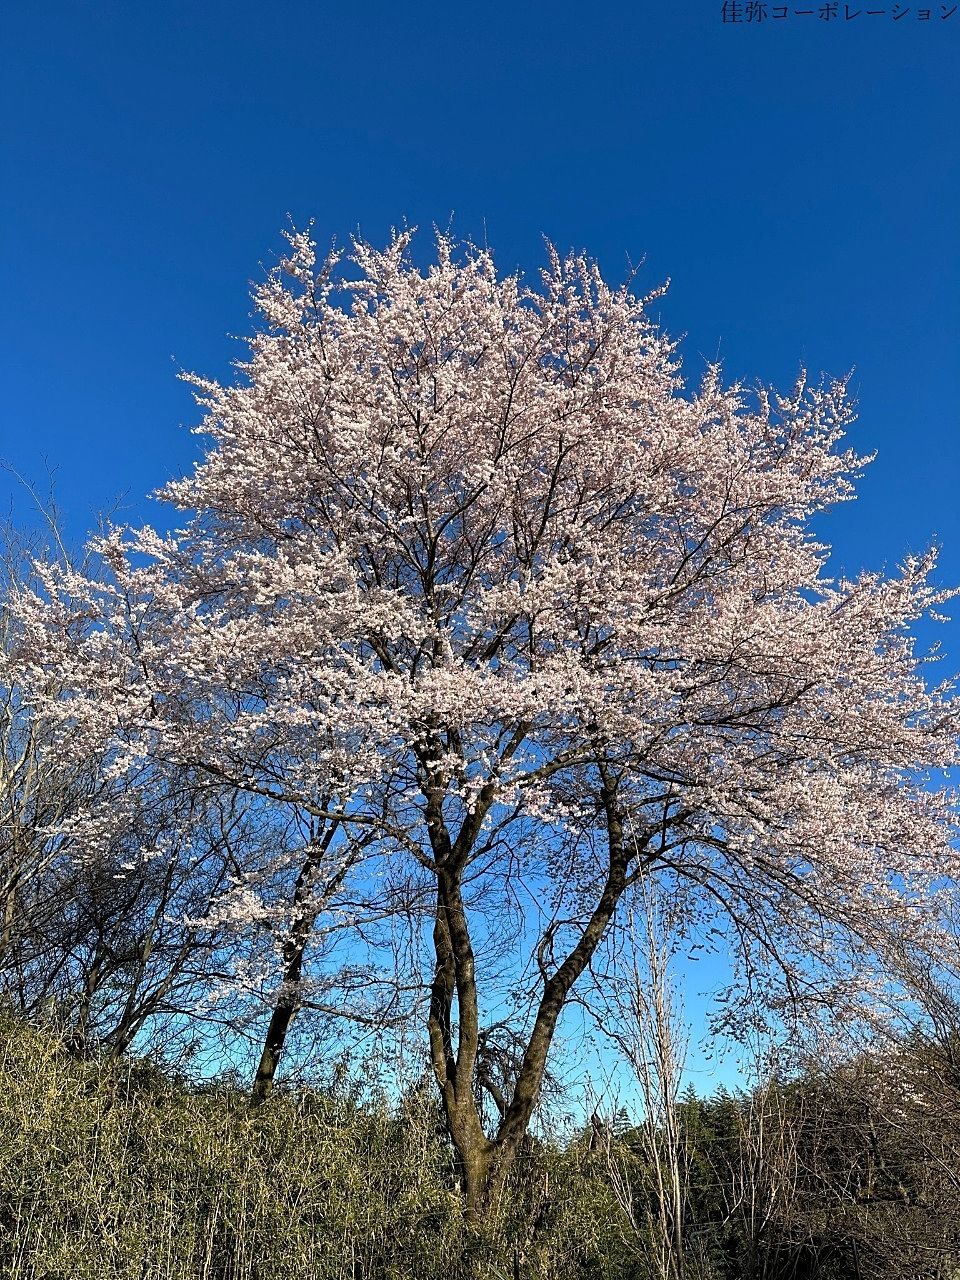 安中の真っ青な空に映える桜が満開です